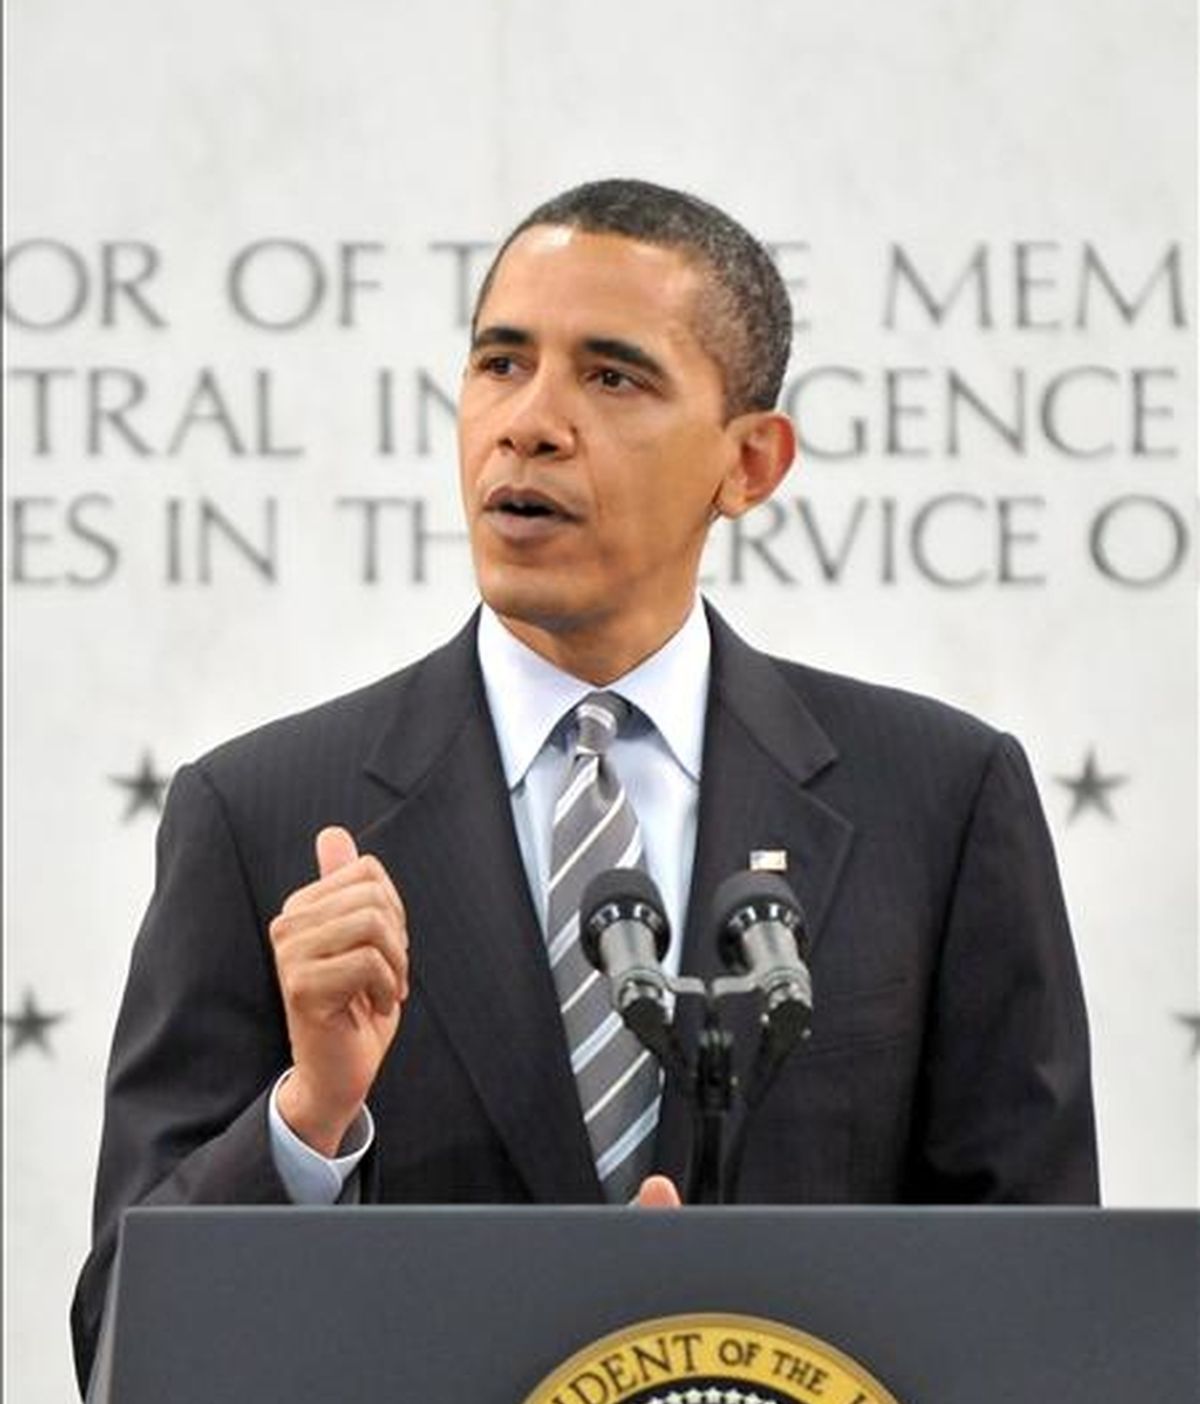 La página de Susan Boyle ha superado en visitas a la del presidente de Estados Unidos, Barack Obama. En la imagen, Obama se dirige a los empleados de la Agencia Central de Inteligencia (CIA) ayer, 20 de abril, en el cuartel general de la CIA, el Centro para Inteligencia George Bush en McLean, Virginia (EEUU). EFE